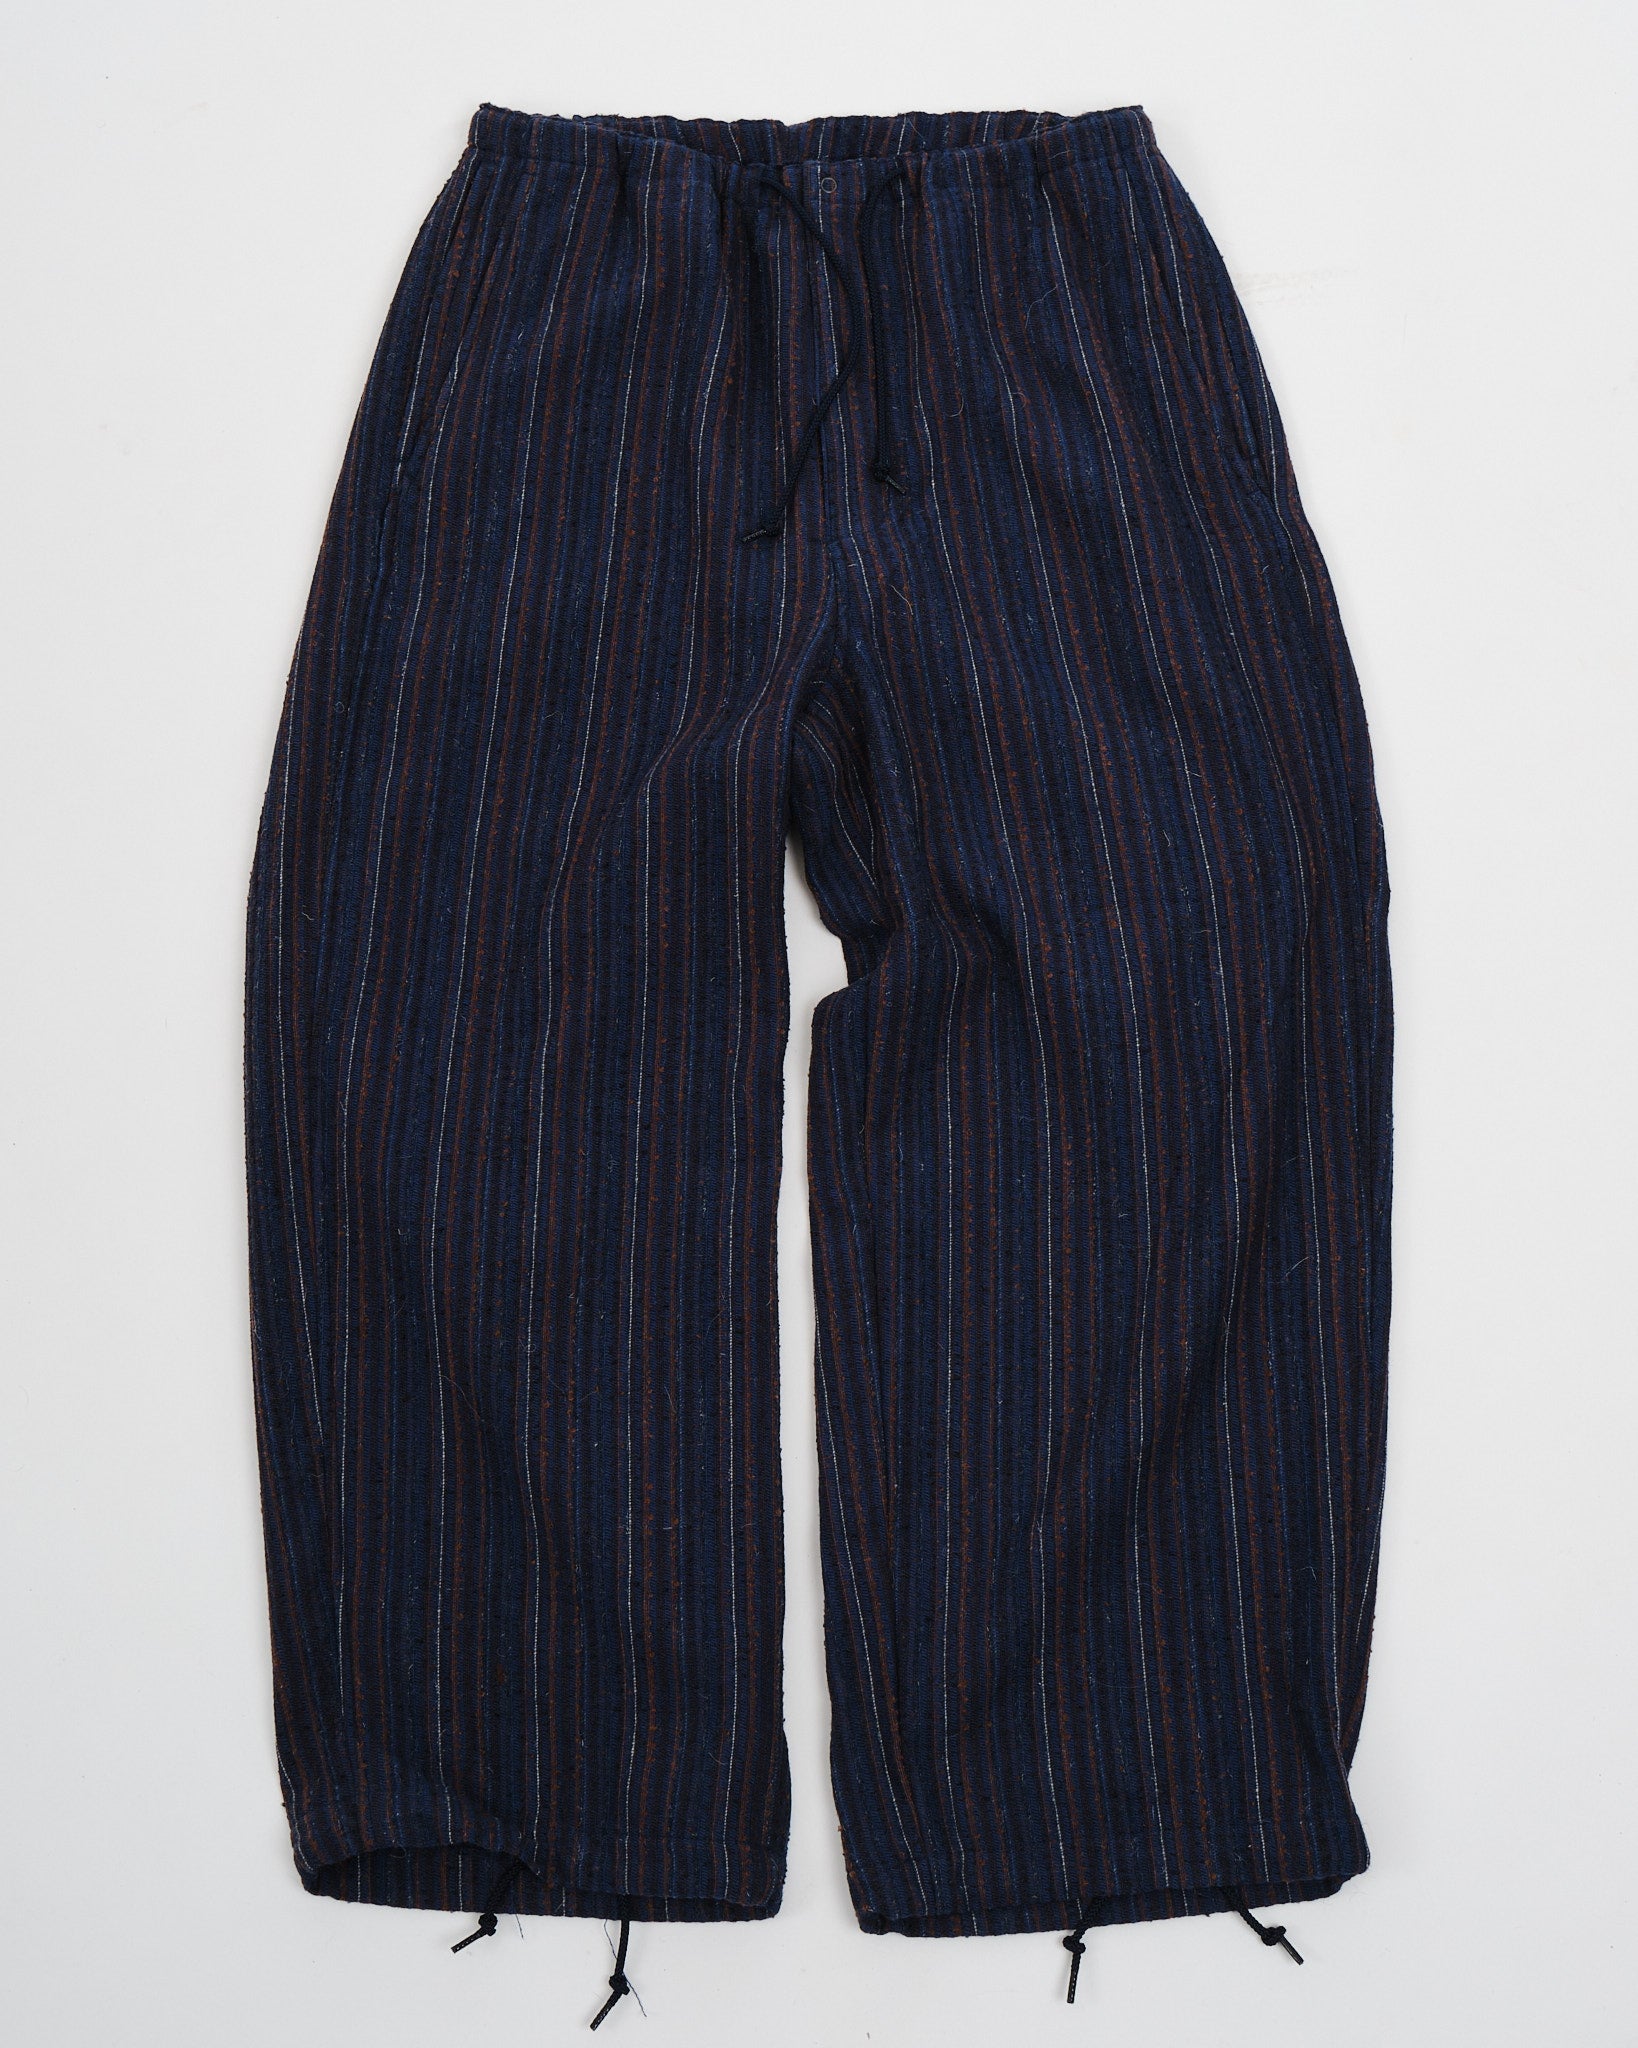 MIL Easy Pants Hickory Tweed Navy - Meadow